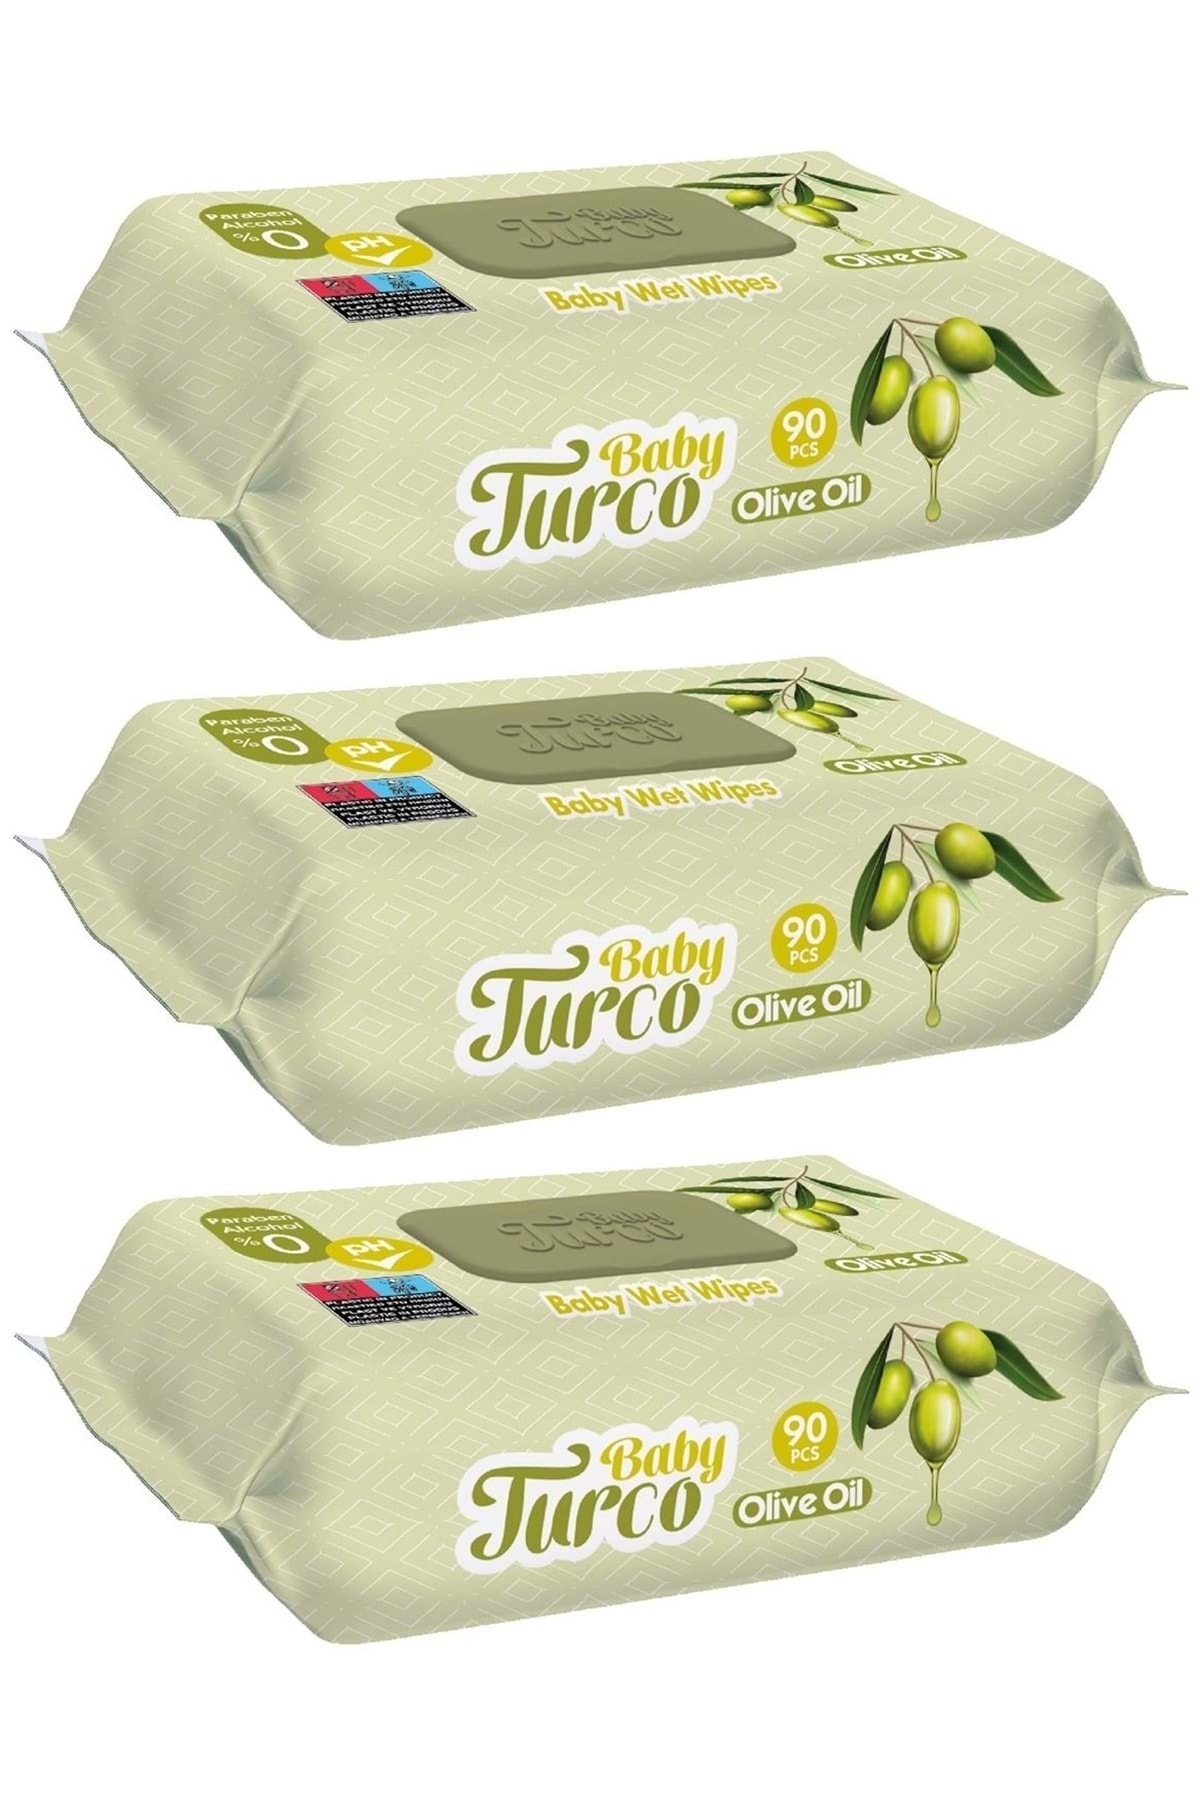 Baby Turco Islak Havlu Mendil 90 Yaprak Zeytinyağlı 3 Lü Set 270 Yaprak Plastik Kapaklı